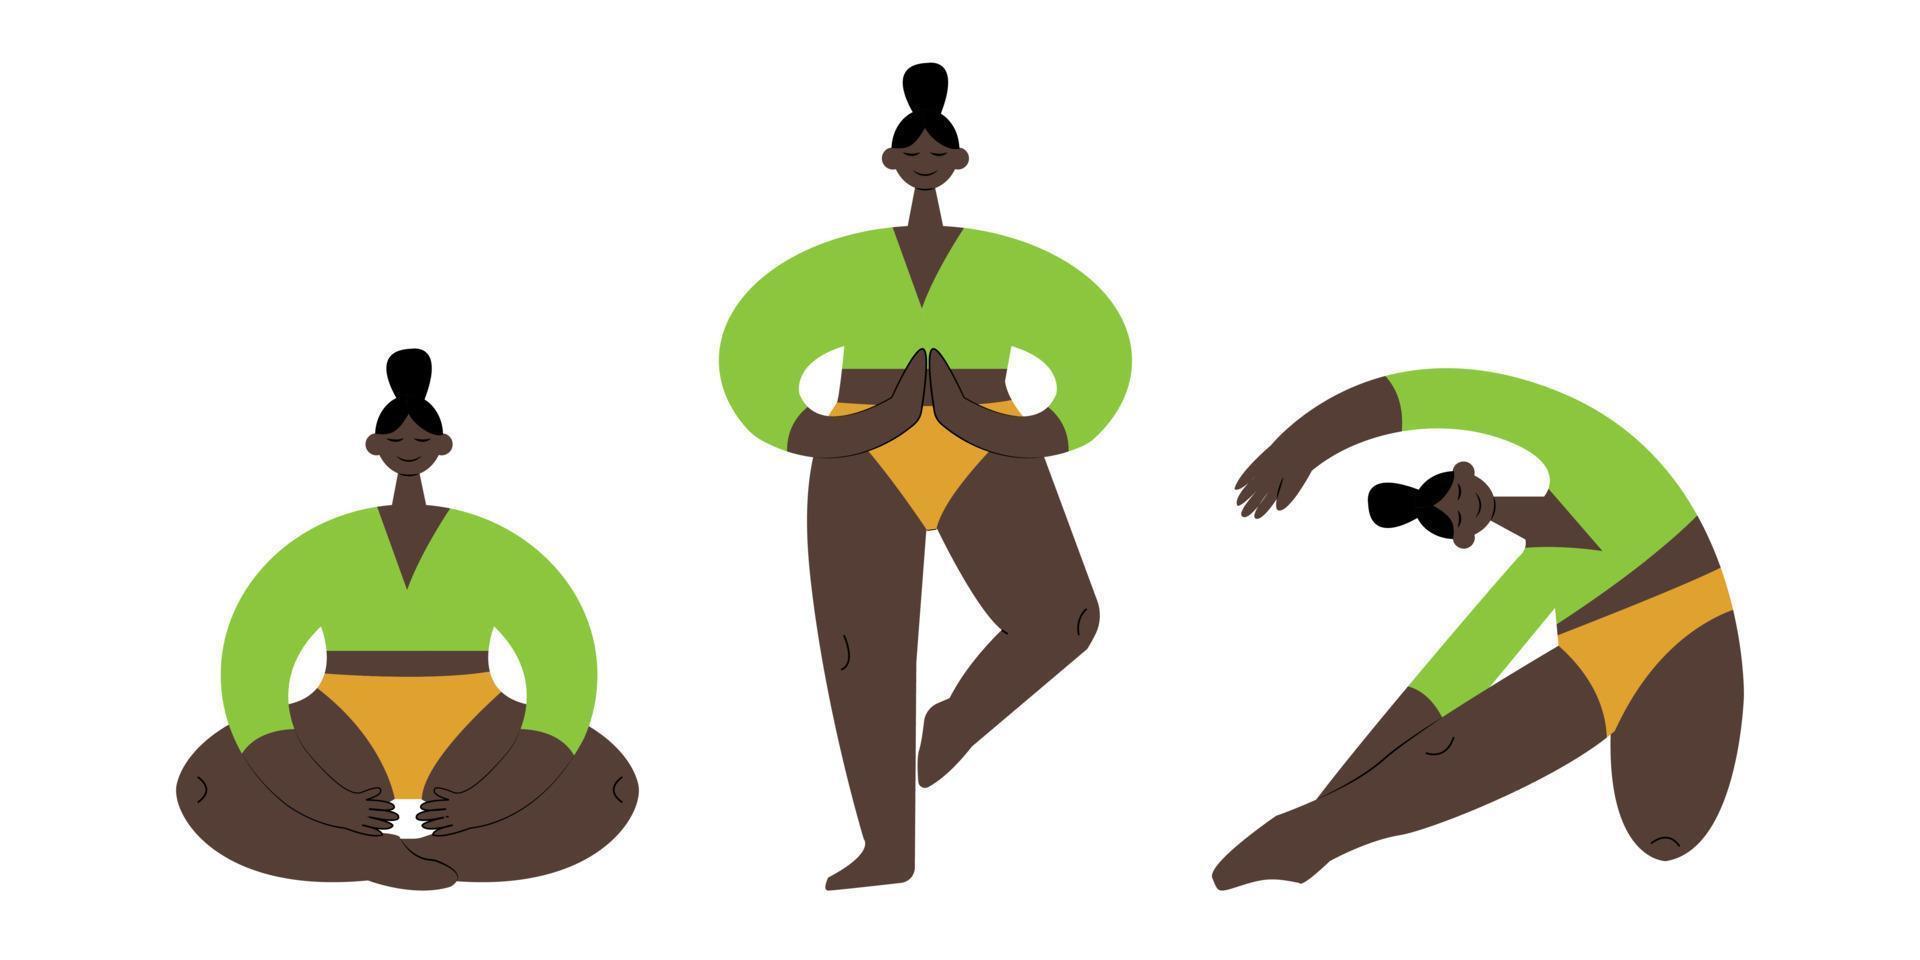 Yoga Zeit. Yoga Pose. Frauen Sport Übung, Fitness, trainieren im anders Posen, dehnen. eben Vektor